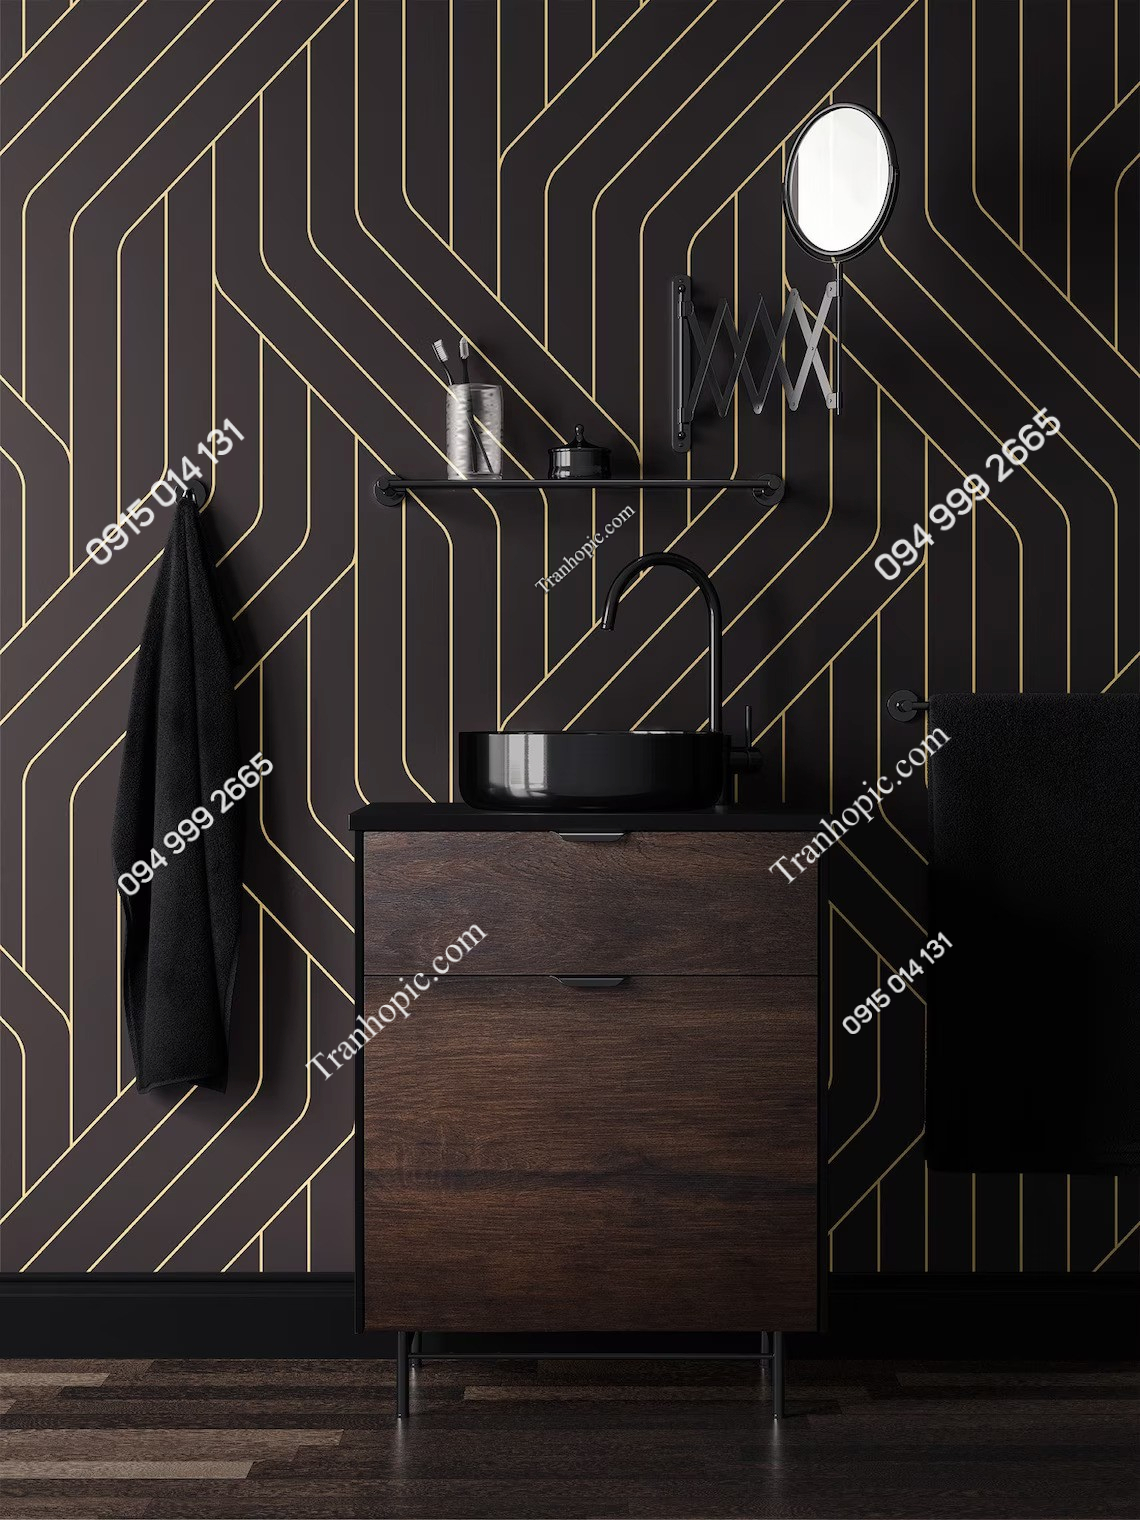 Tranh dán tường sọc vàng đen trừu tượng hiện đại trang trí phòng ngủ 887194593